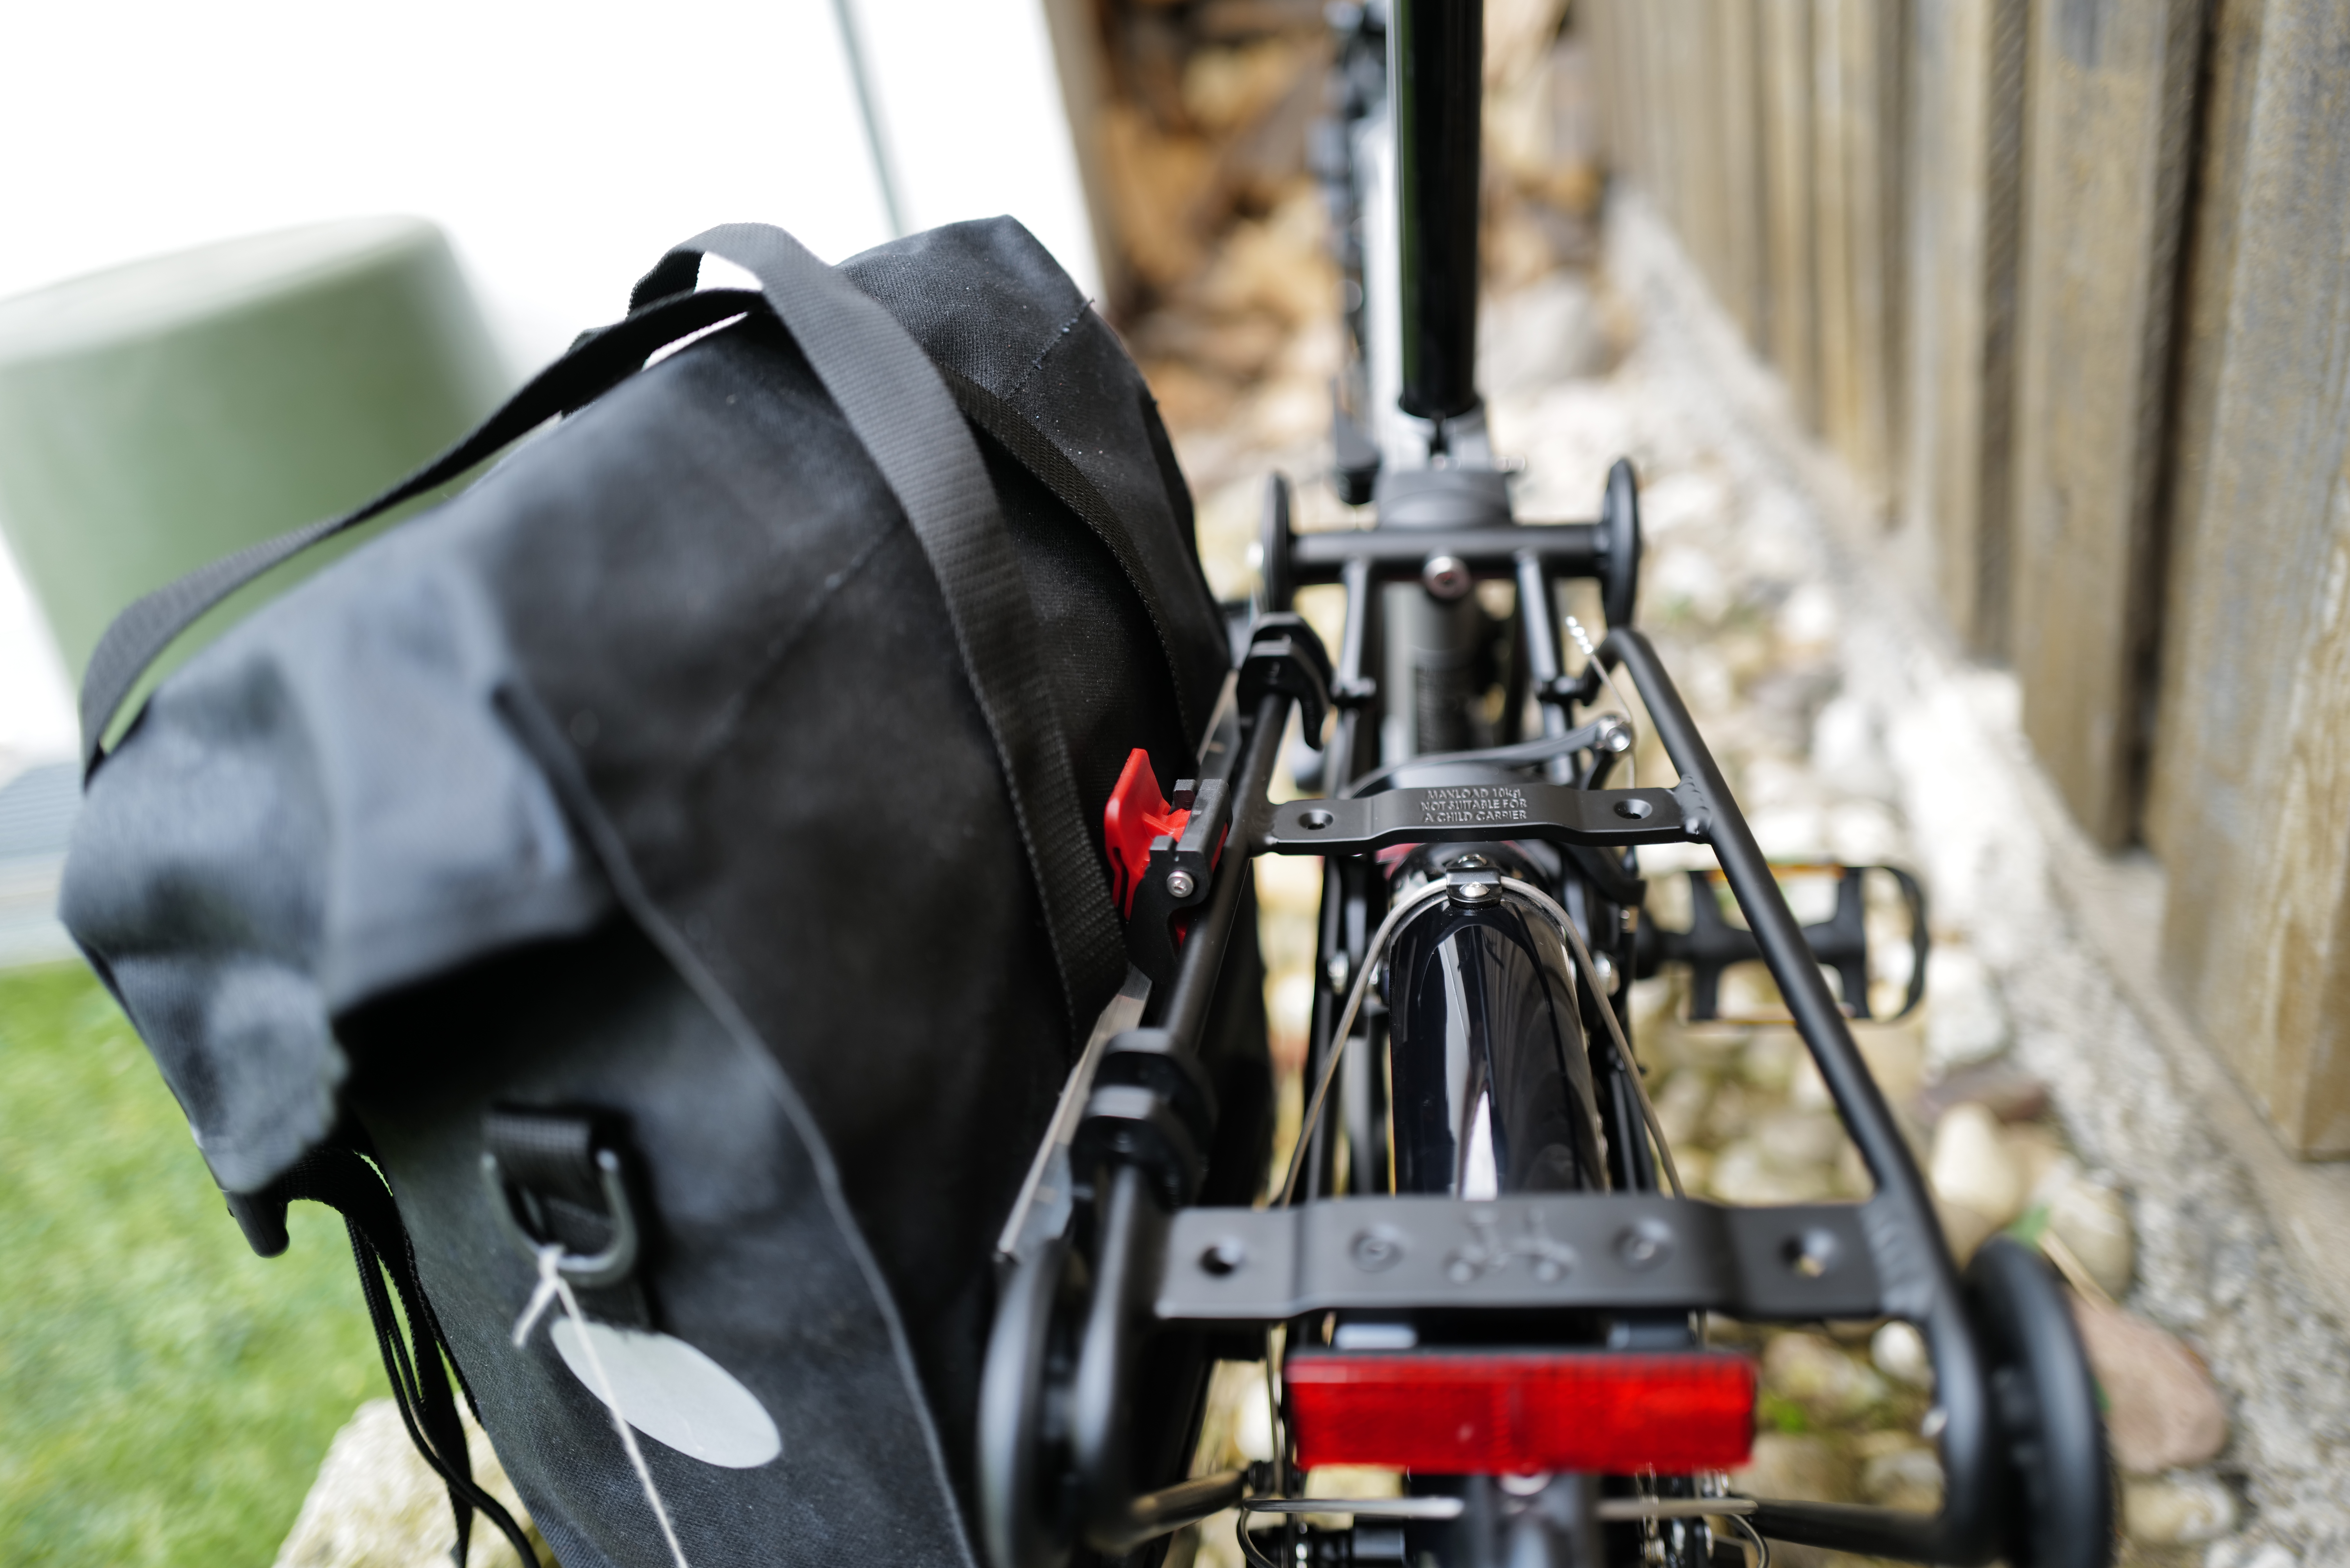 Carradice Super C A4 Fahrradtasche passend für Brompton Gepäckträger